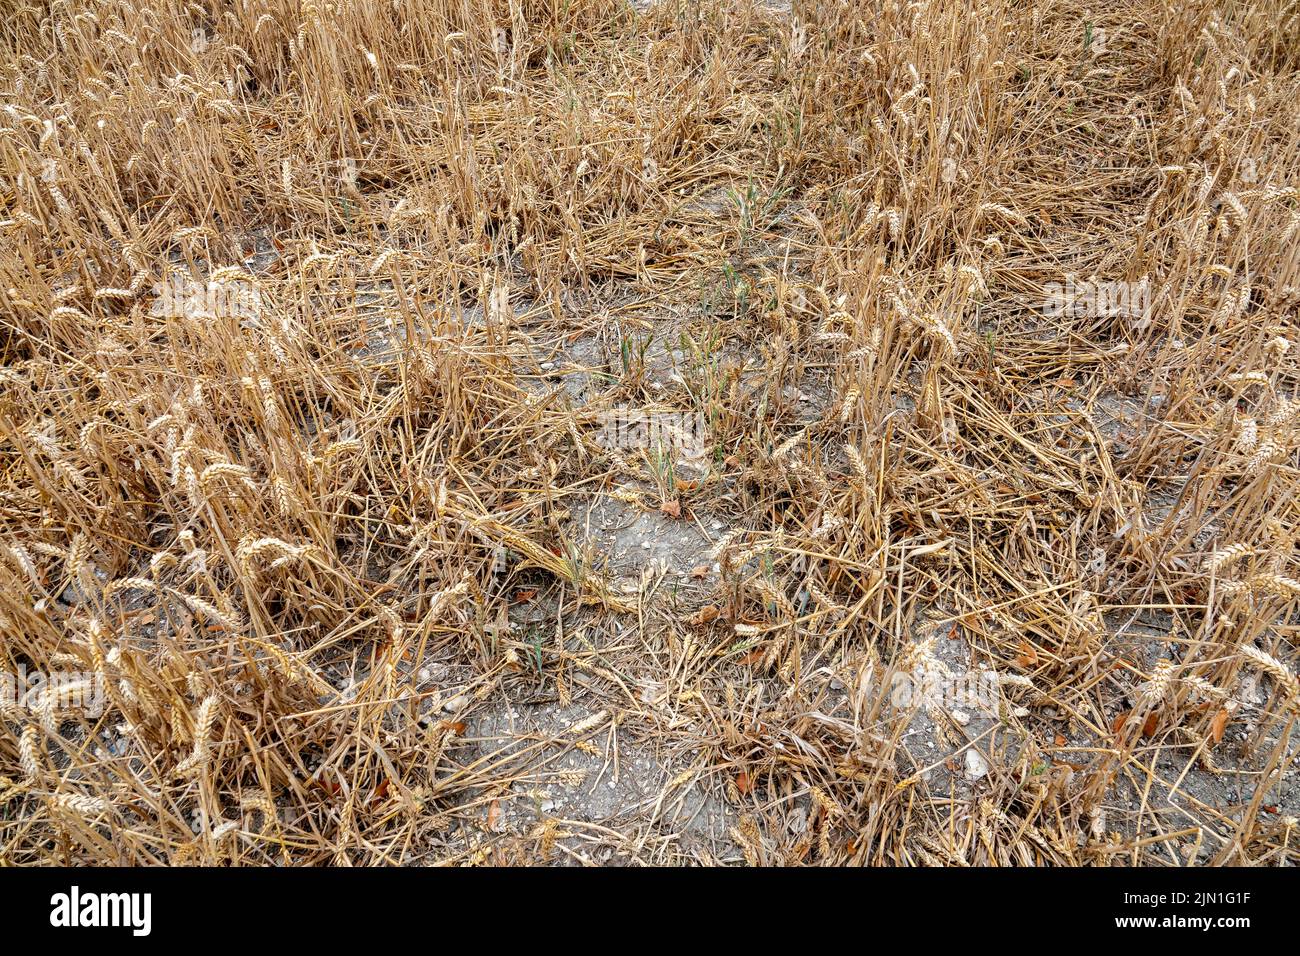 Una pequeña superficie de cosecha de trigo deficiente debido a la sequía Foto de stock